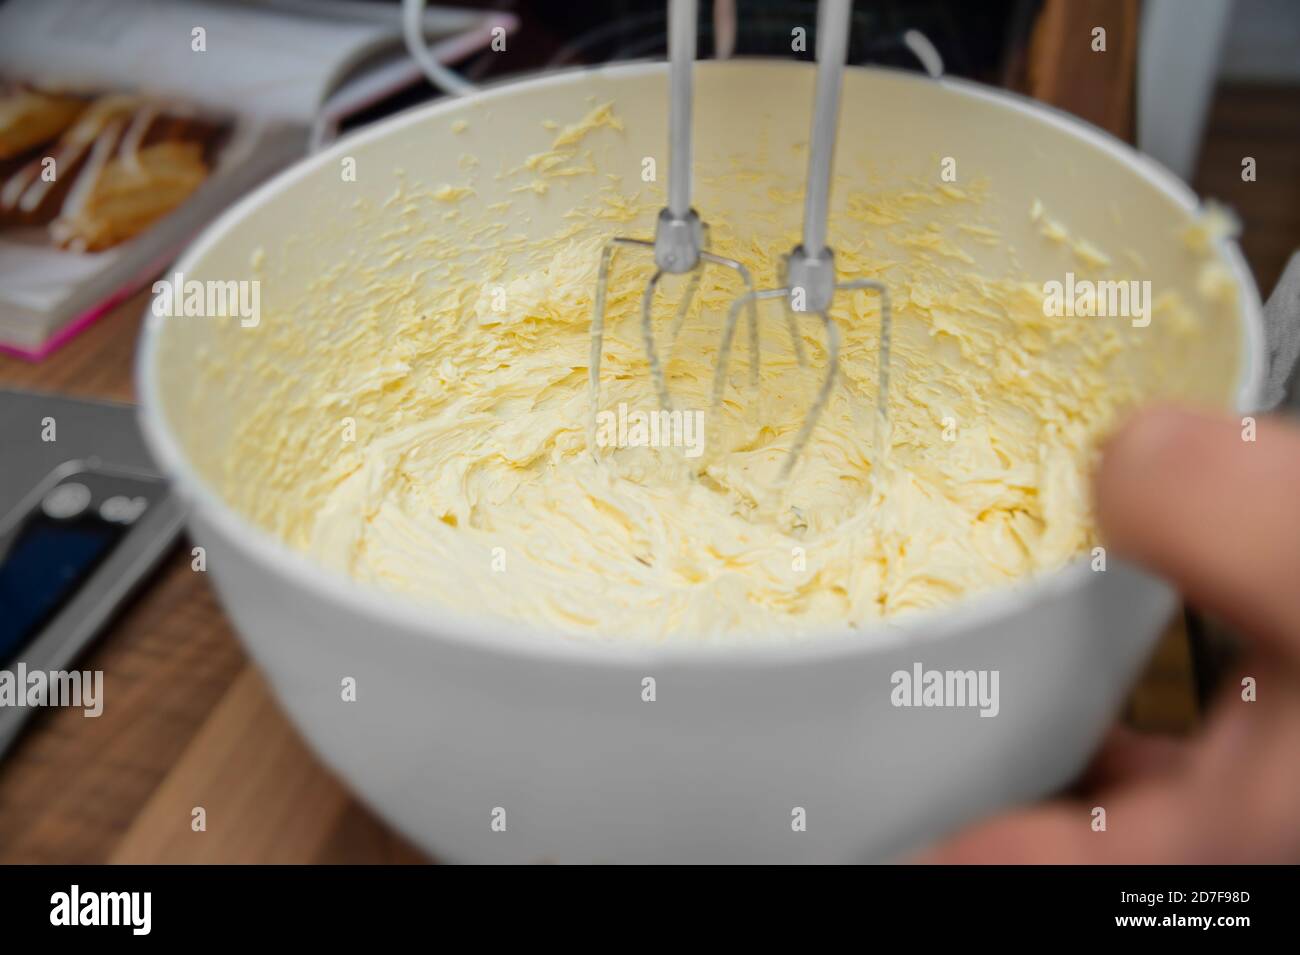 Un homme tient un mixeur plongeant électrique. Il mélange le beurre, les oeufs et le sucre. Une petite pâtisserie est préparée. Gros plan depuis la cuisine. Banque D'Images